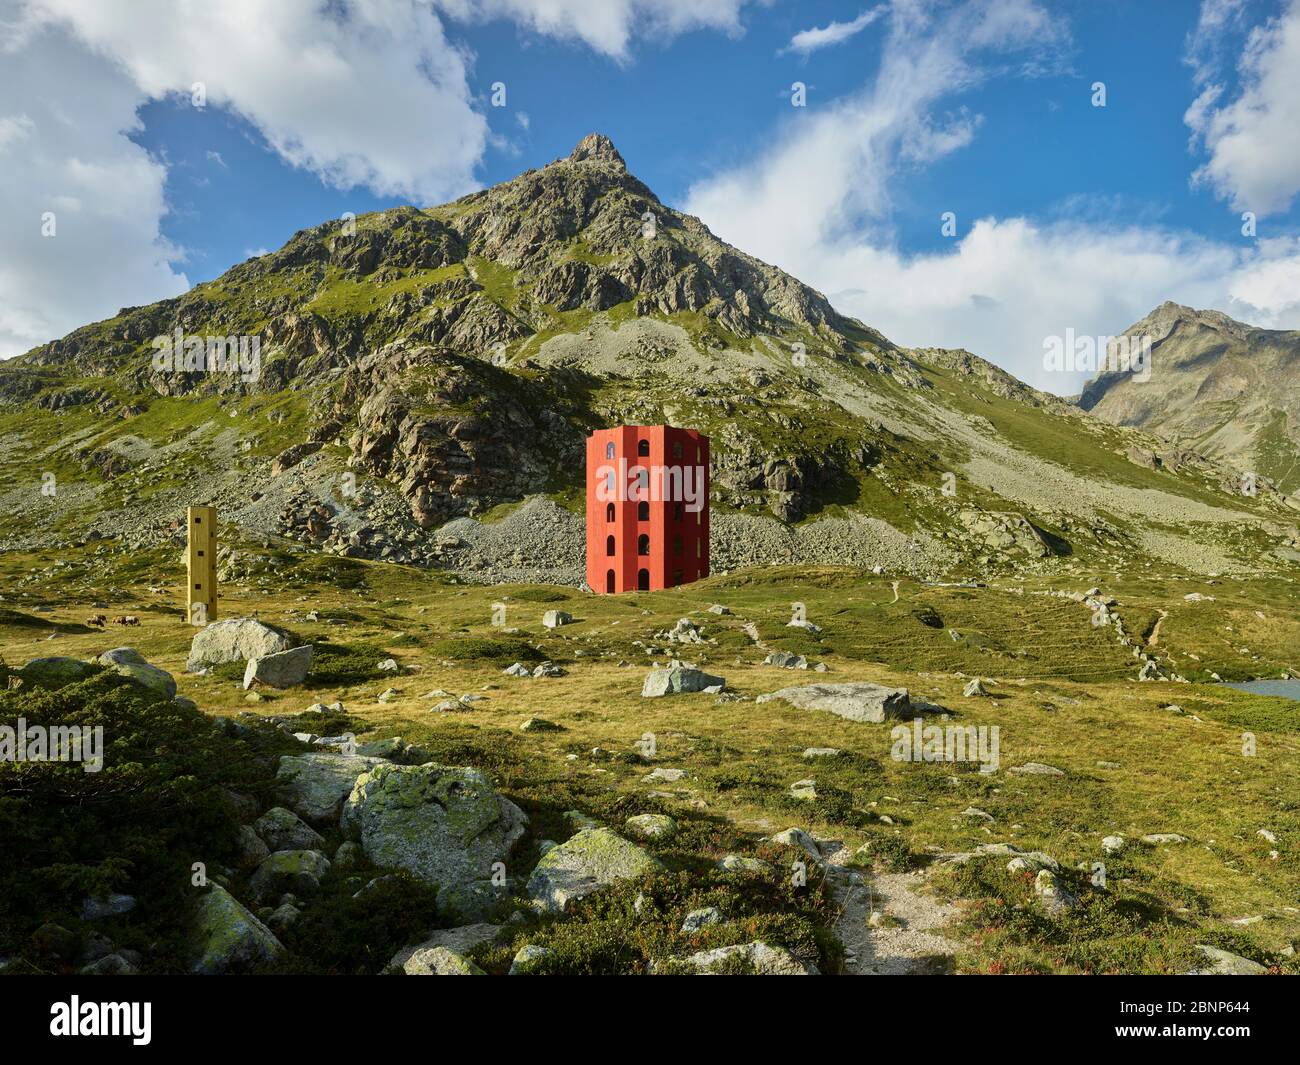 Origen, Juliertheater, Julierpass, Graubünden, Switzerland Stock Photo -  Alamy